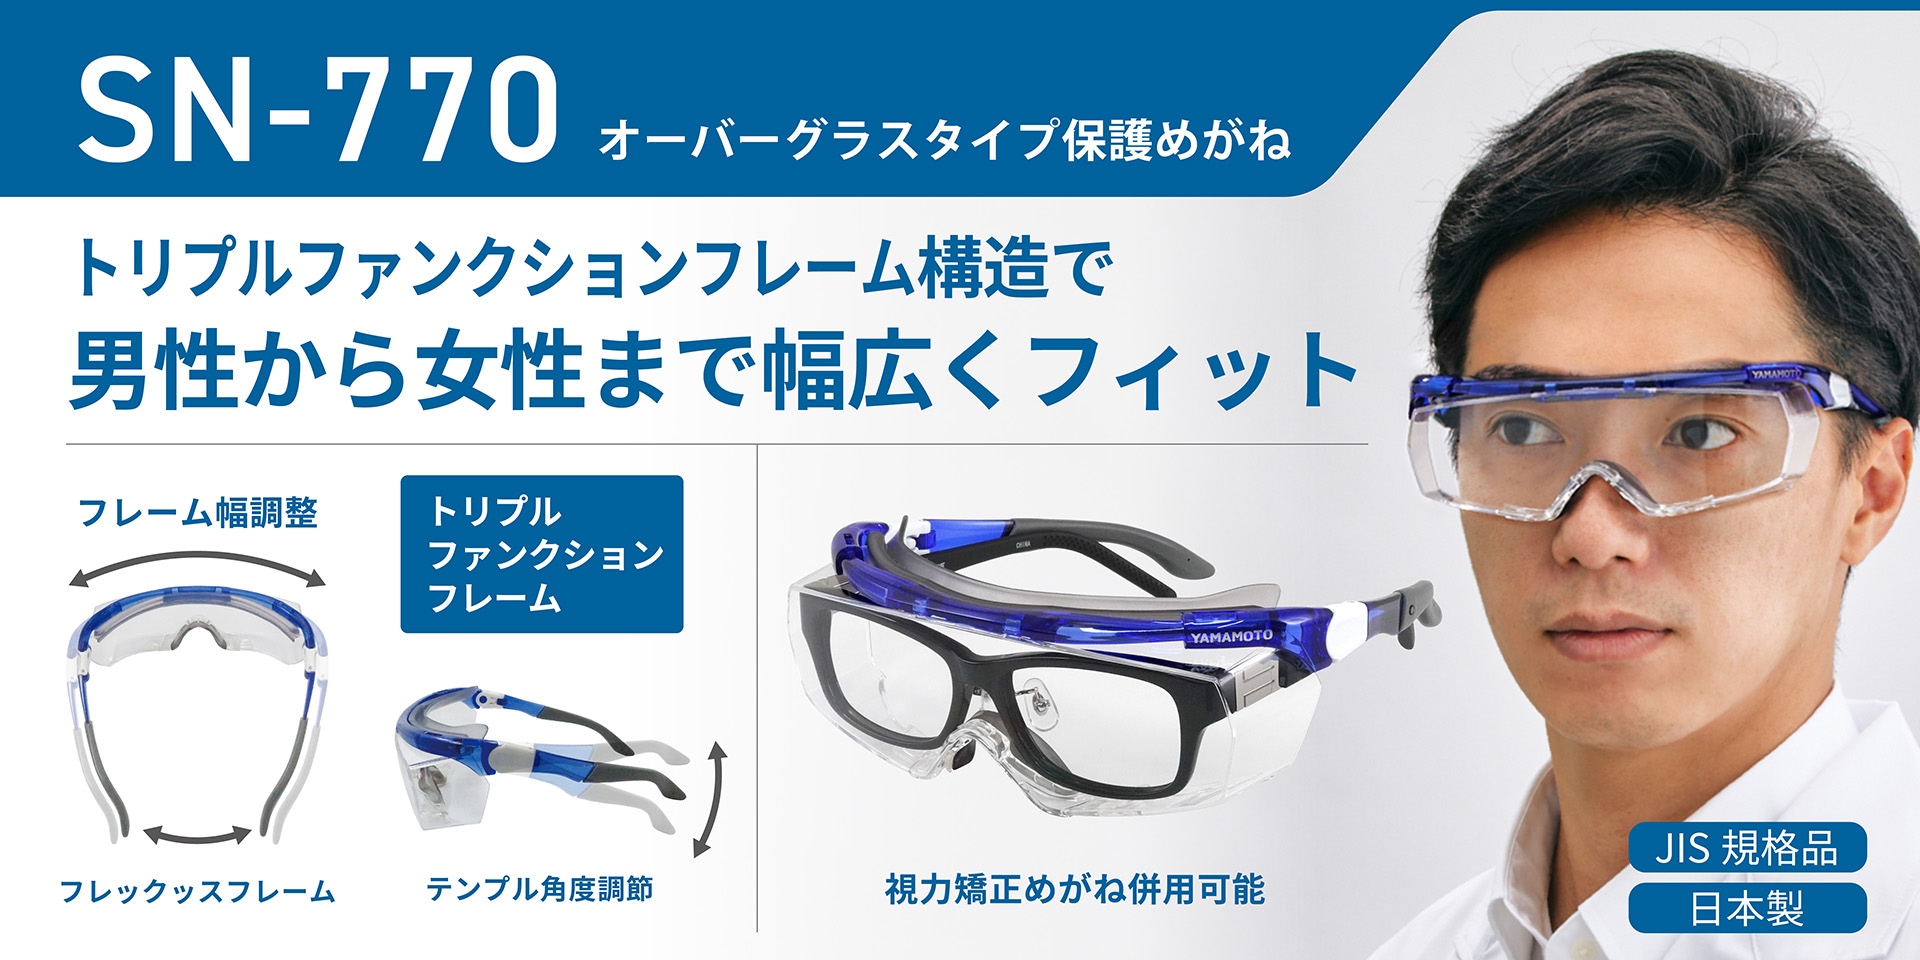 YAMAMOTO 二眼型保護めがね YX530